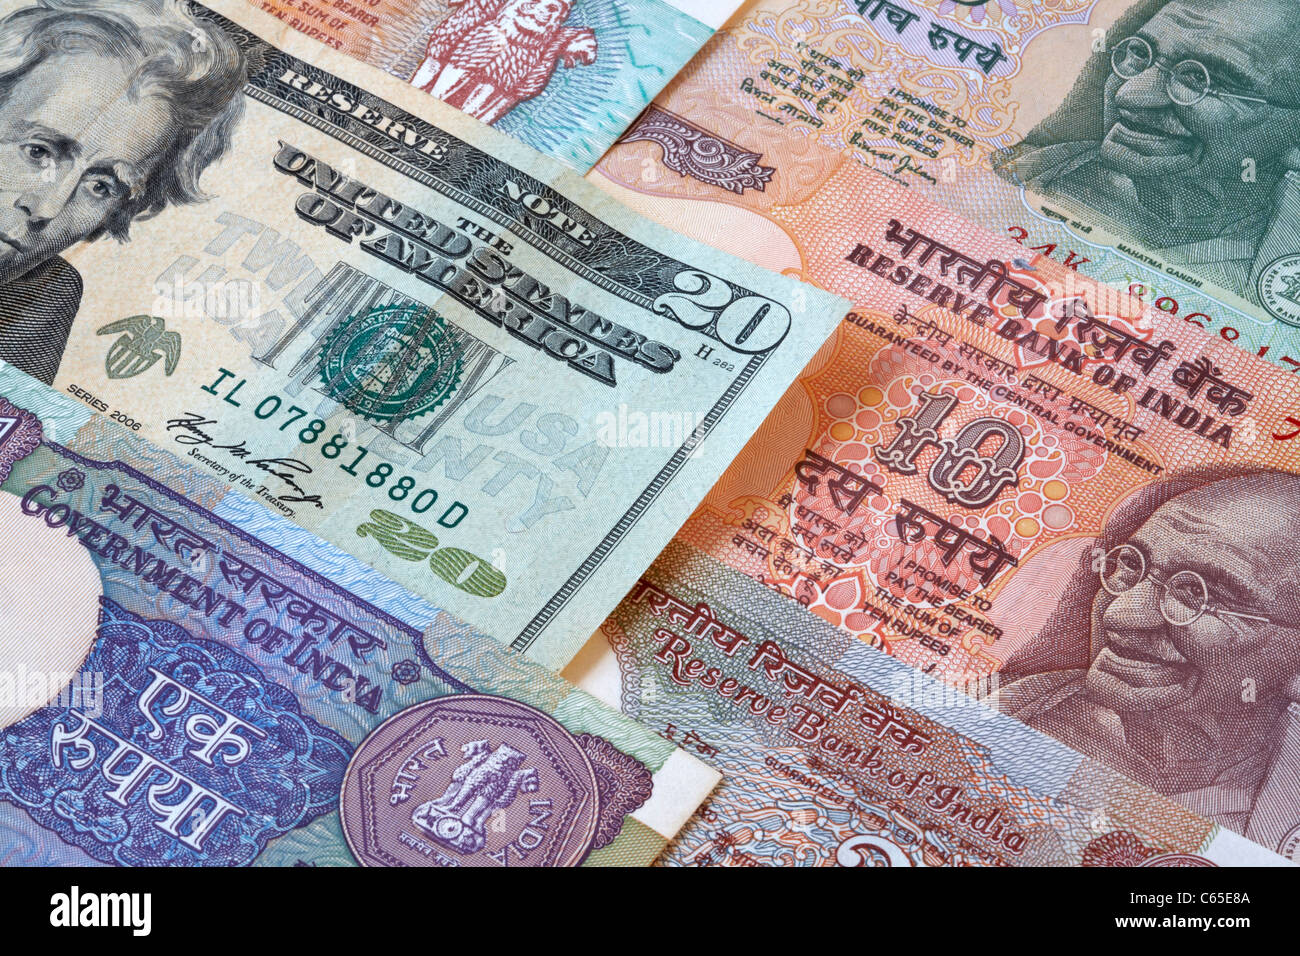 Moneda India Billetes de rupias con Estados Unidos de América 20 Dollar Bill Foto de stock